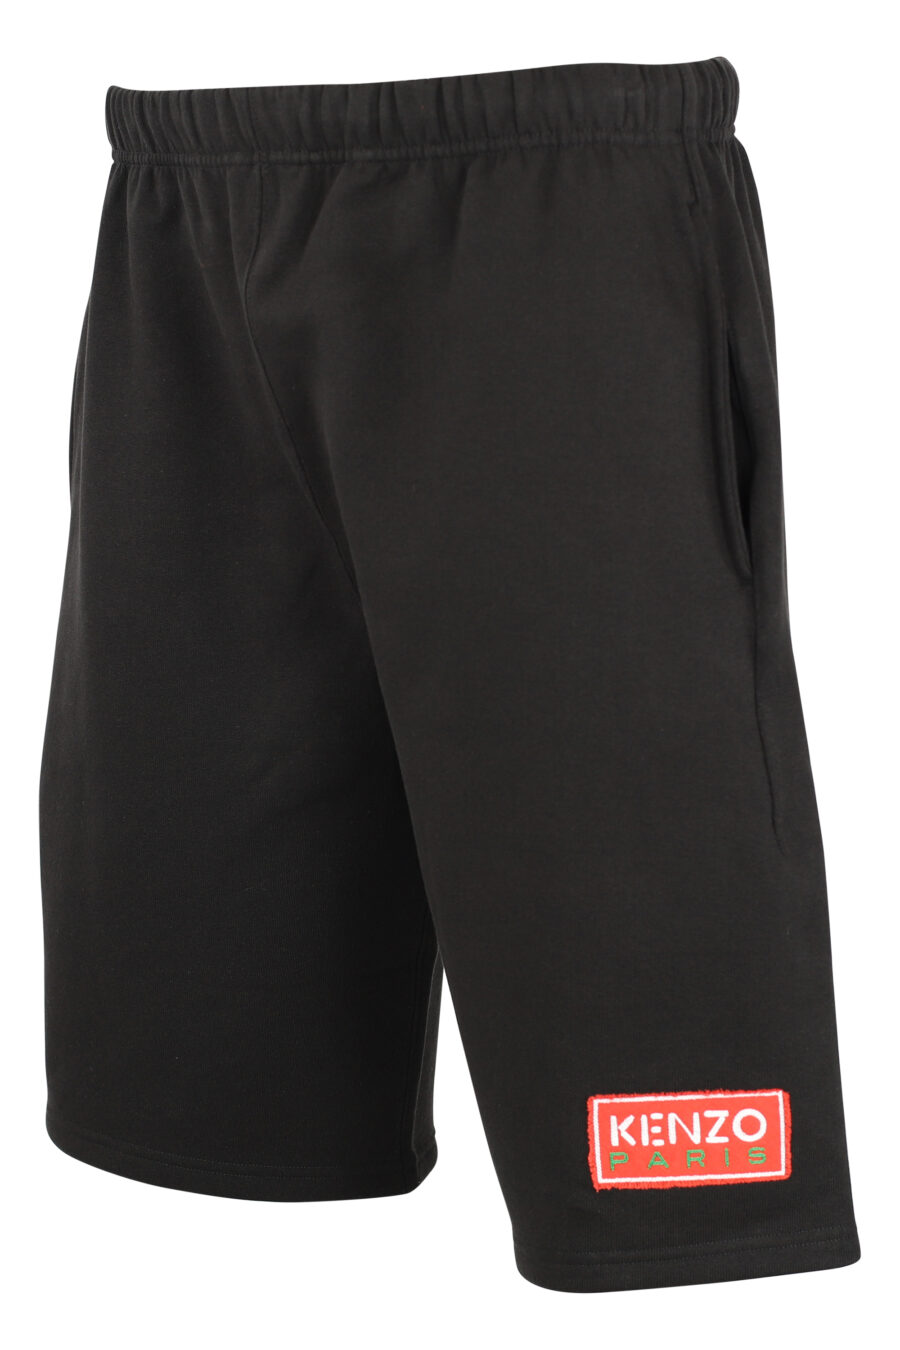 Pantalón de chándal negro corto con minilogo "paris classic" - IMG 9510